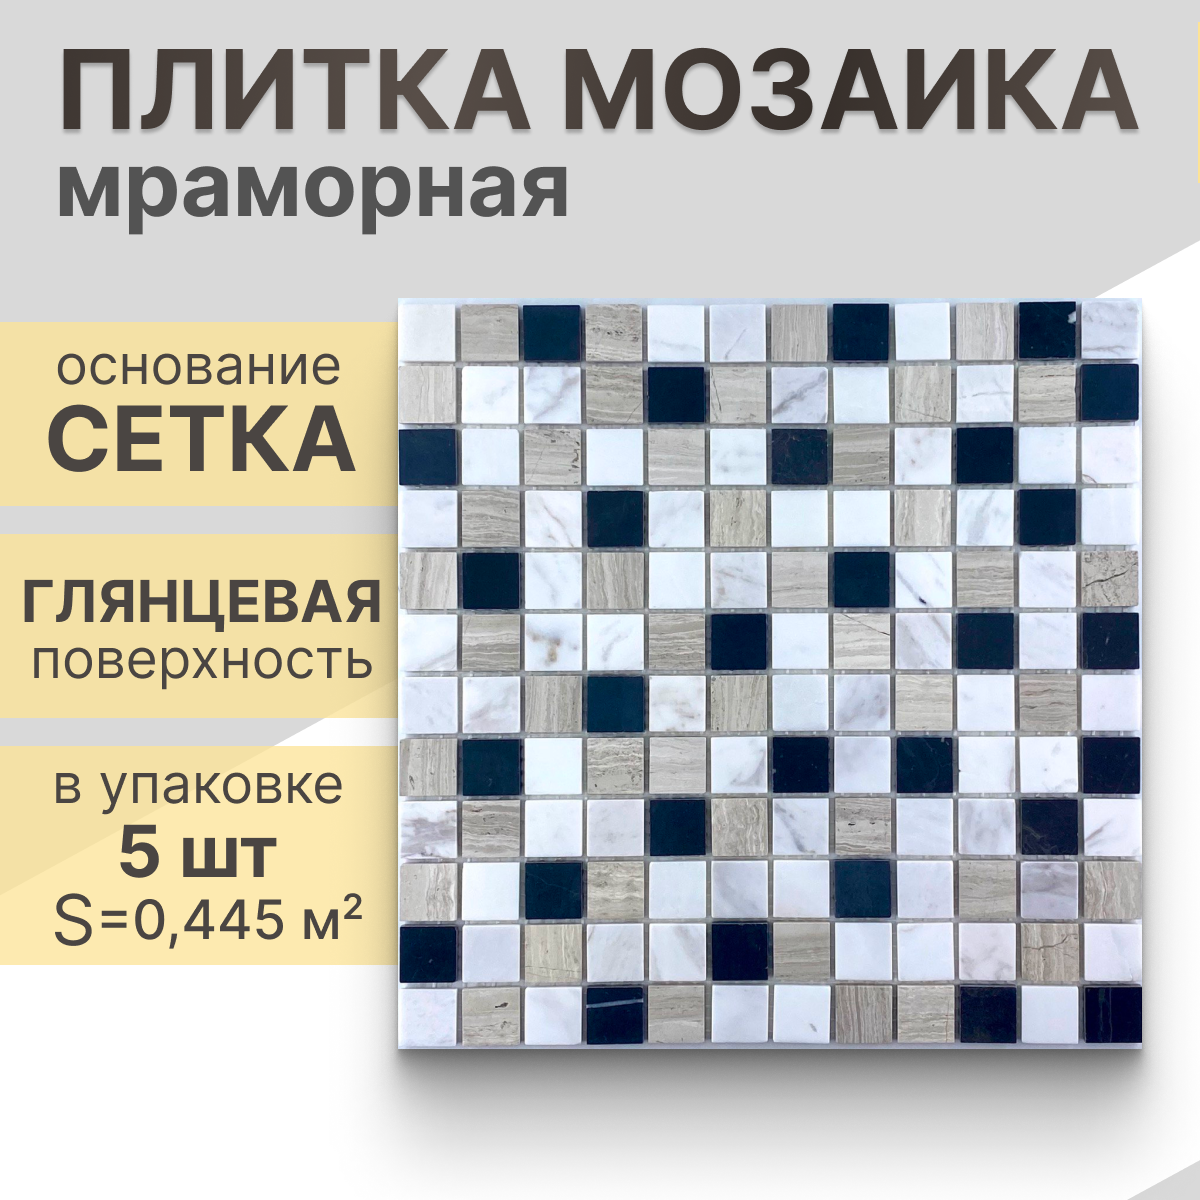 Мозаика (мрамор) NS mosaic Kp-746 29,8x29,8 см 5 шт (0,445 м²)